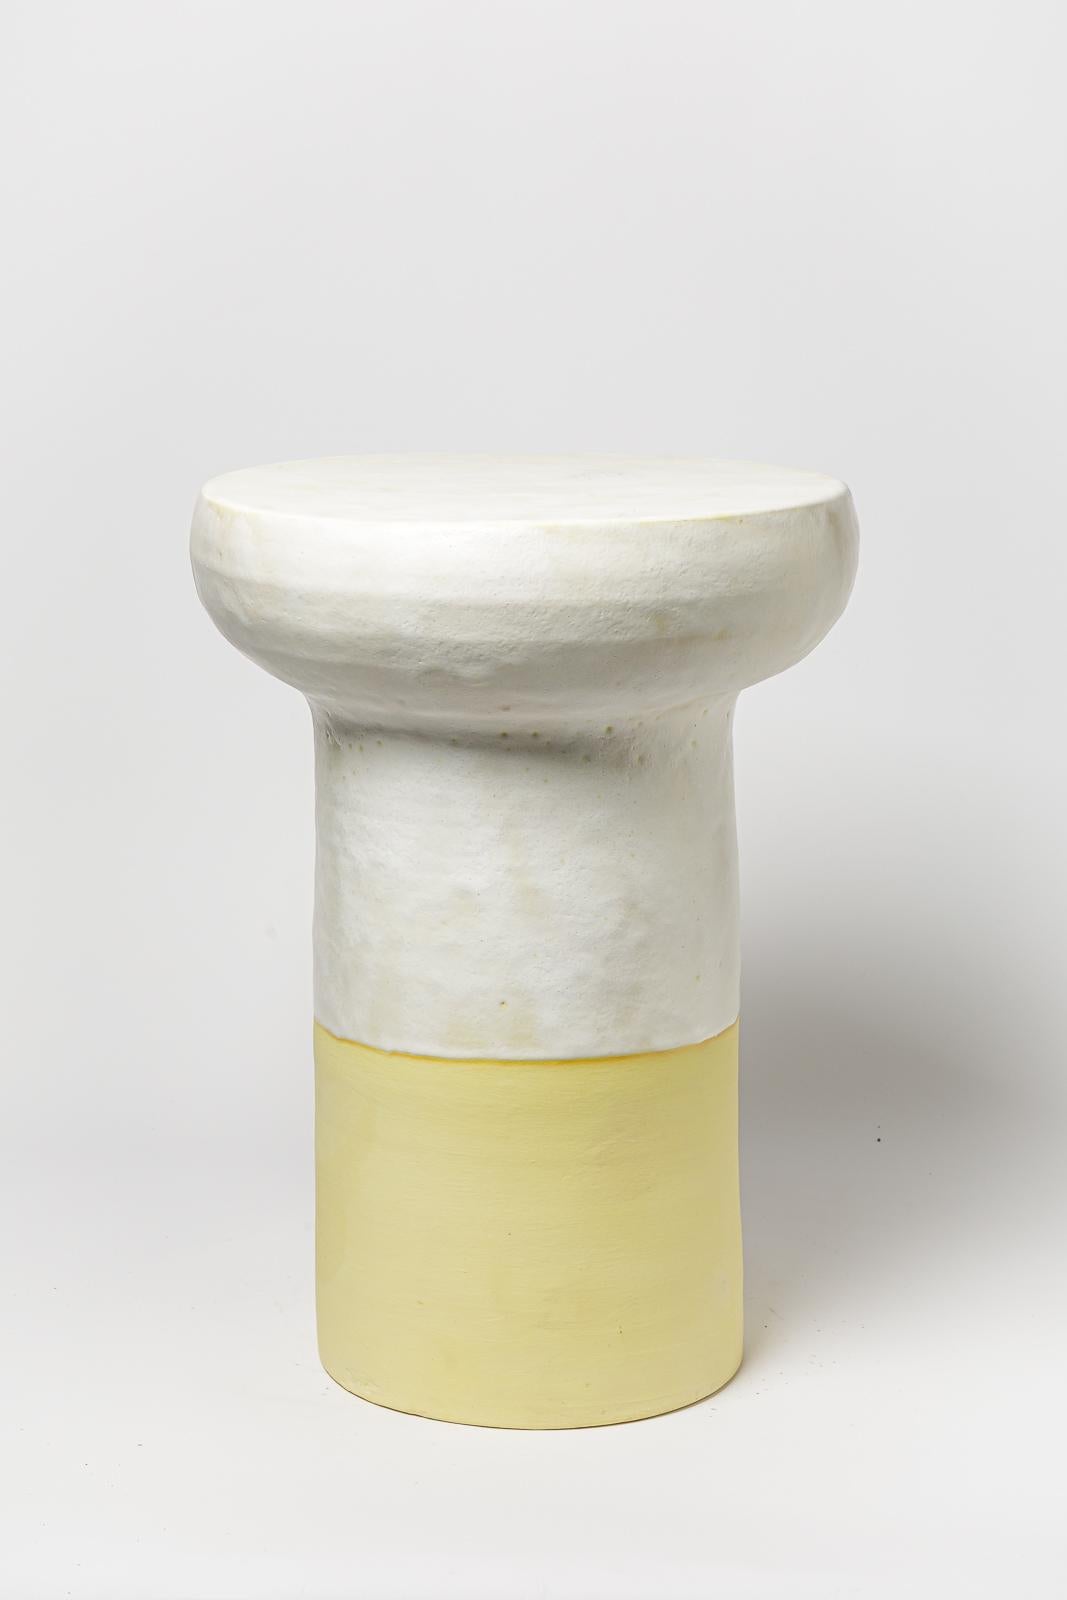 Tabouret ou table basse en céramique émaillée blanche et jaune par Mia Jensen. 
Signature de l'artiste sous la base. 2023.
H : 21.6' x 15.3' pouces.